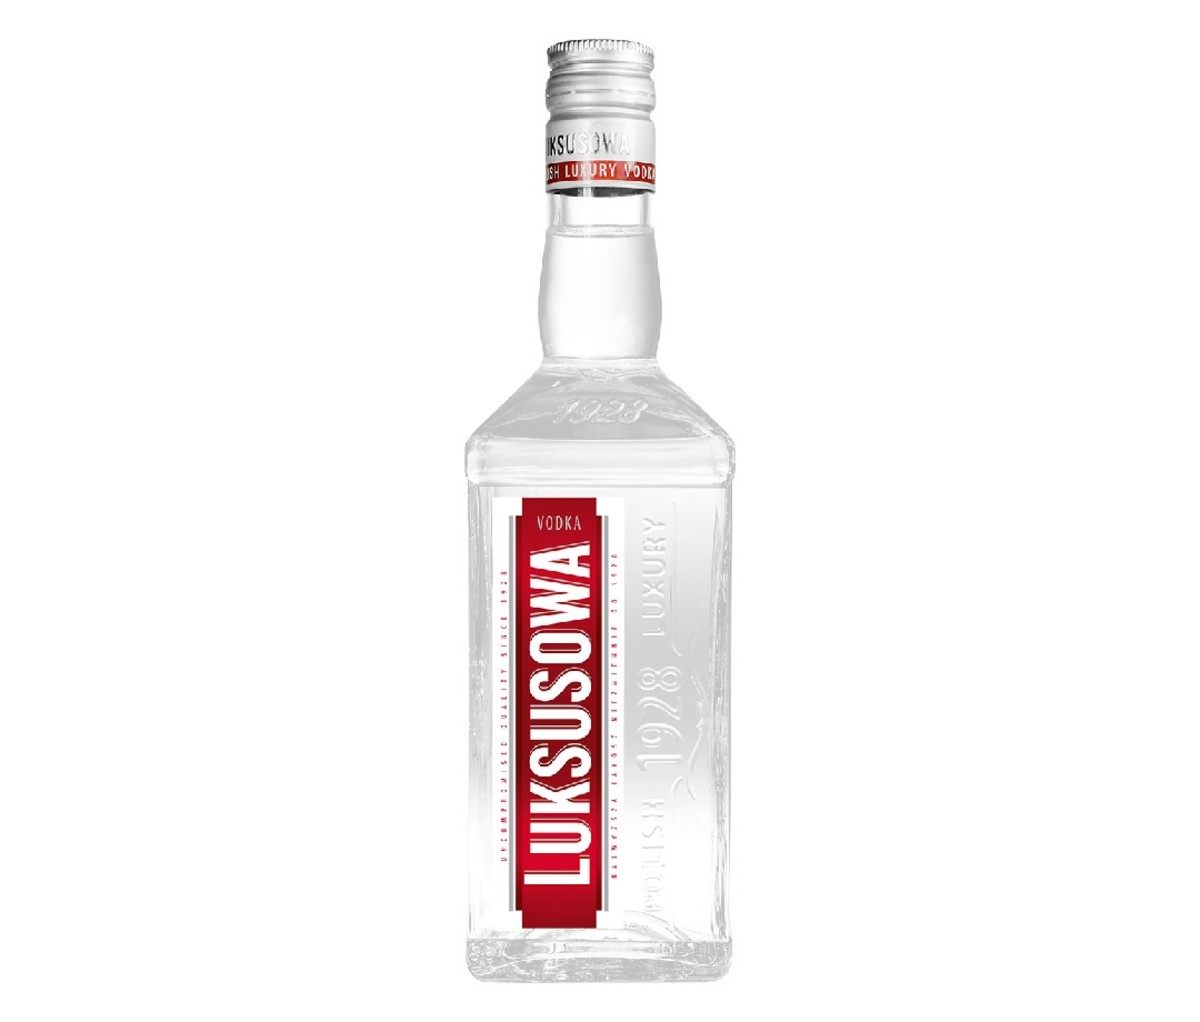 A bottle of Luksusowa potato vodka